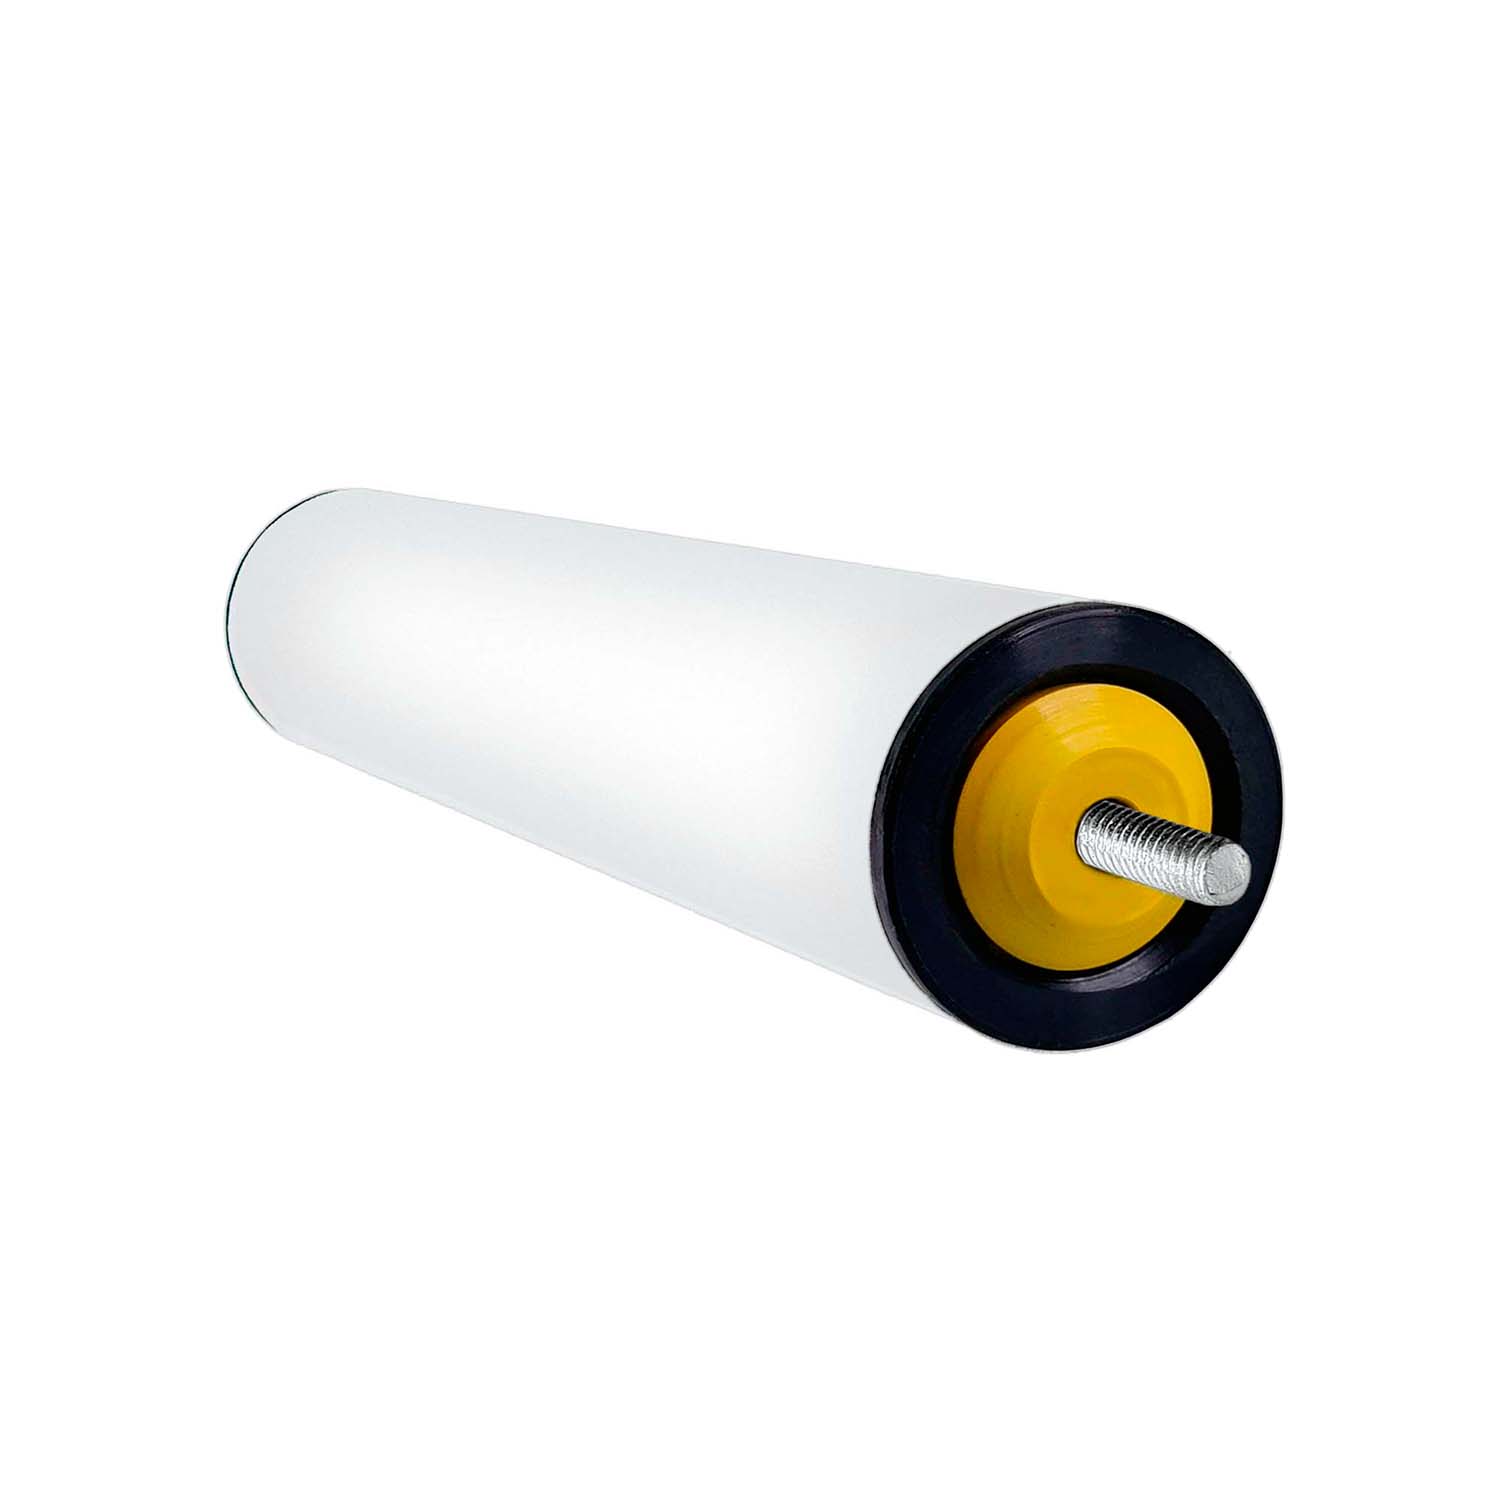 Rolete de PVC - Diâmetro 50 mm - Comprimento útil de 850 mm